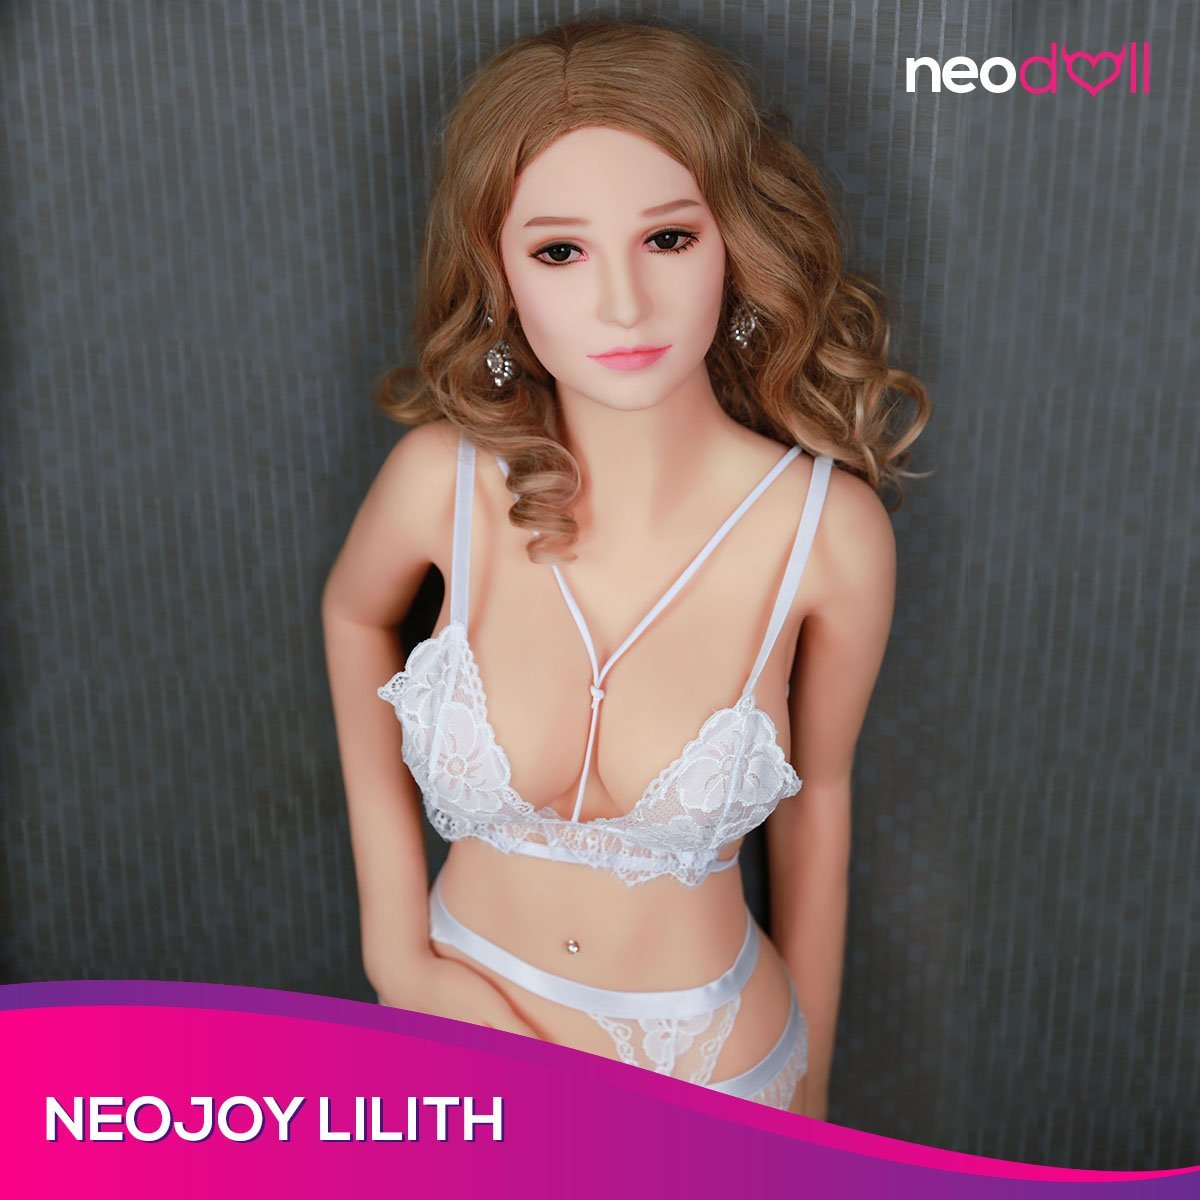 Neojoy Lilith - Realistic Sex Doll - 165cm